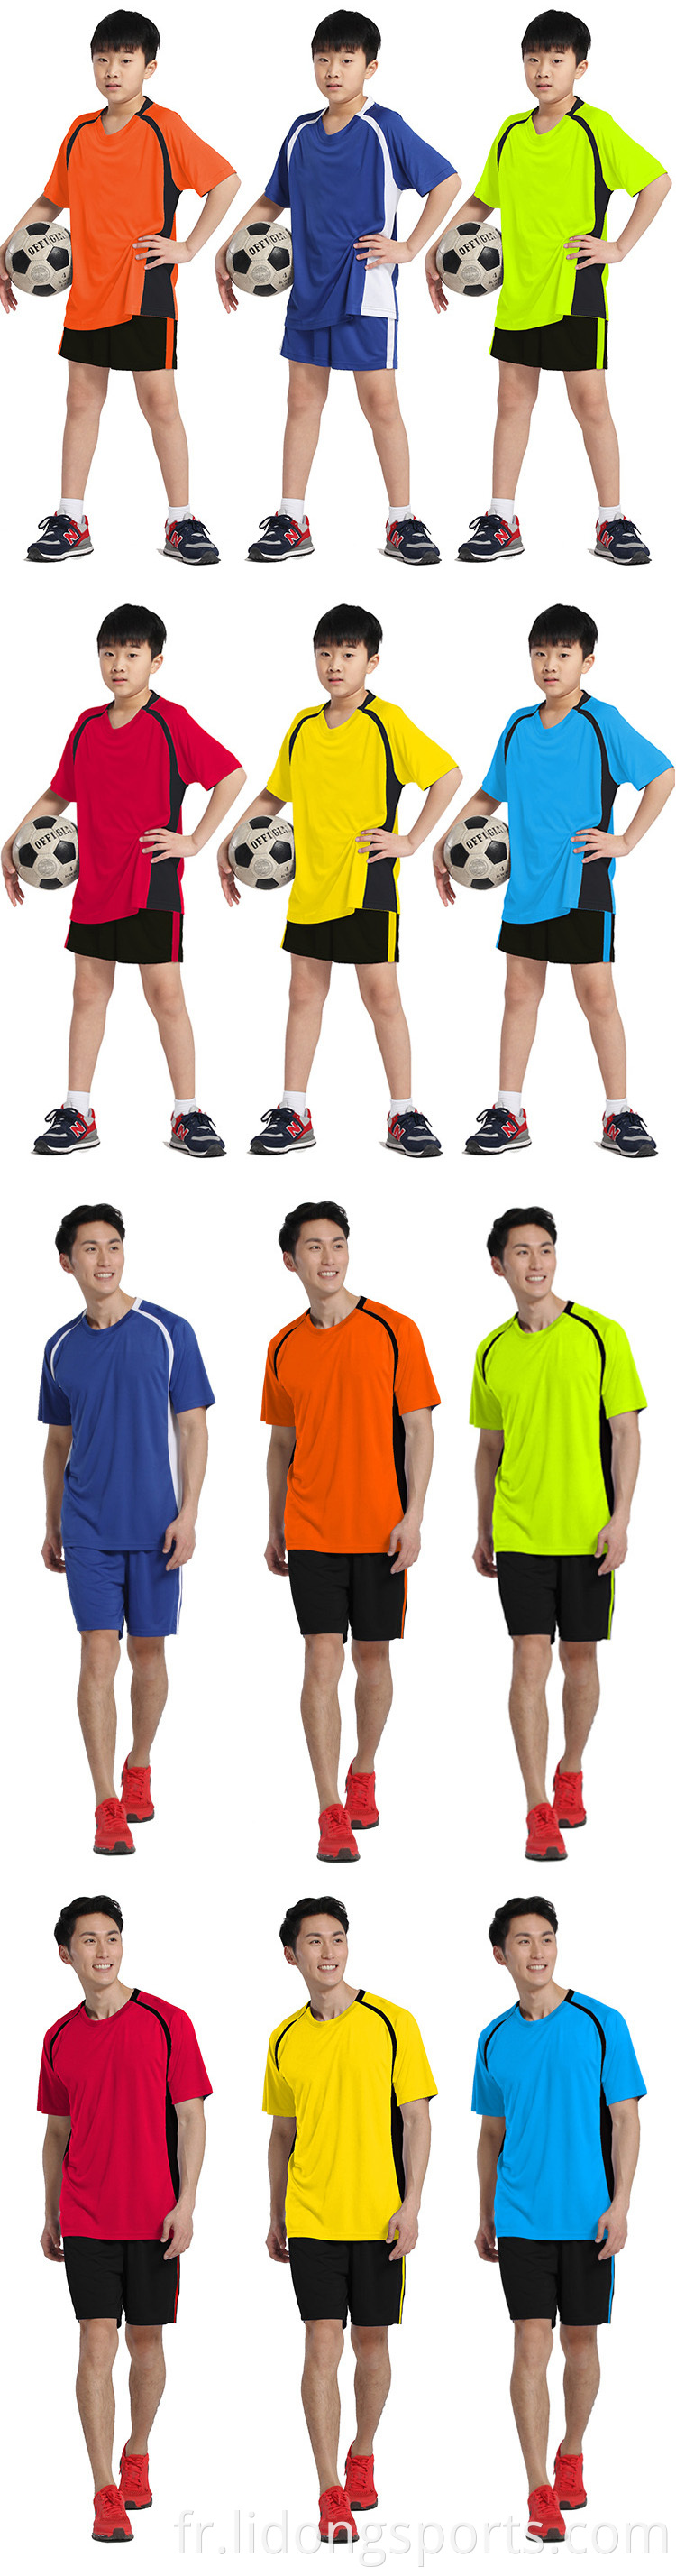 NOUVEAU modèle de maillot de soccer pour enfants, derniers ensembles de joggers de conceptions, Black Sample Football Club Jersey Design